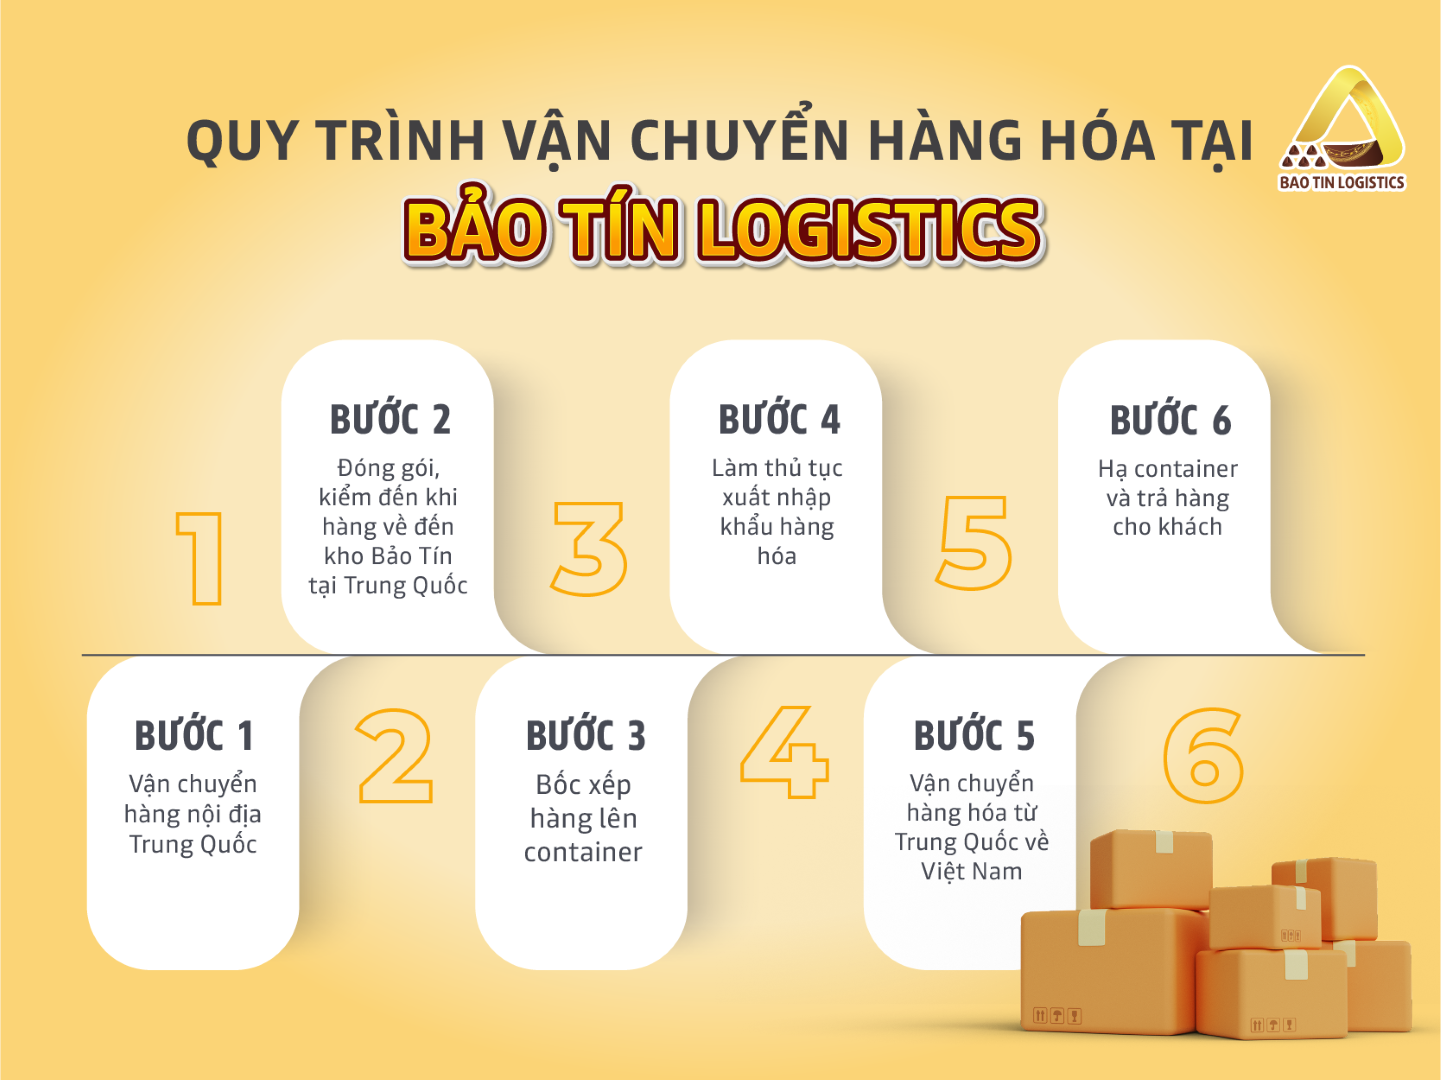 quy-trinh-van-chuyen-hang-hoa-tai-bao-tin-logistics